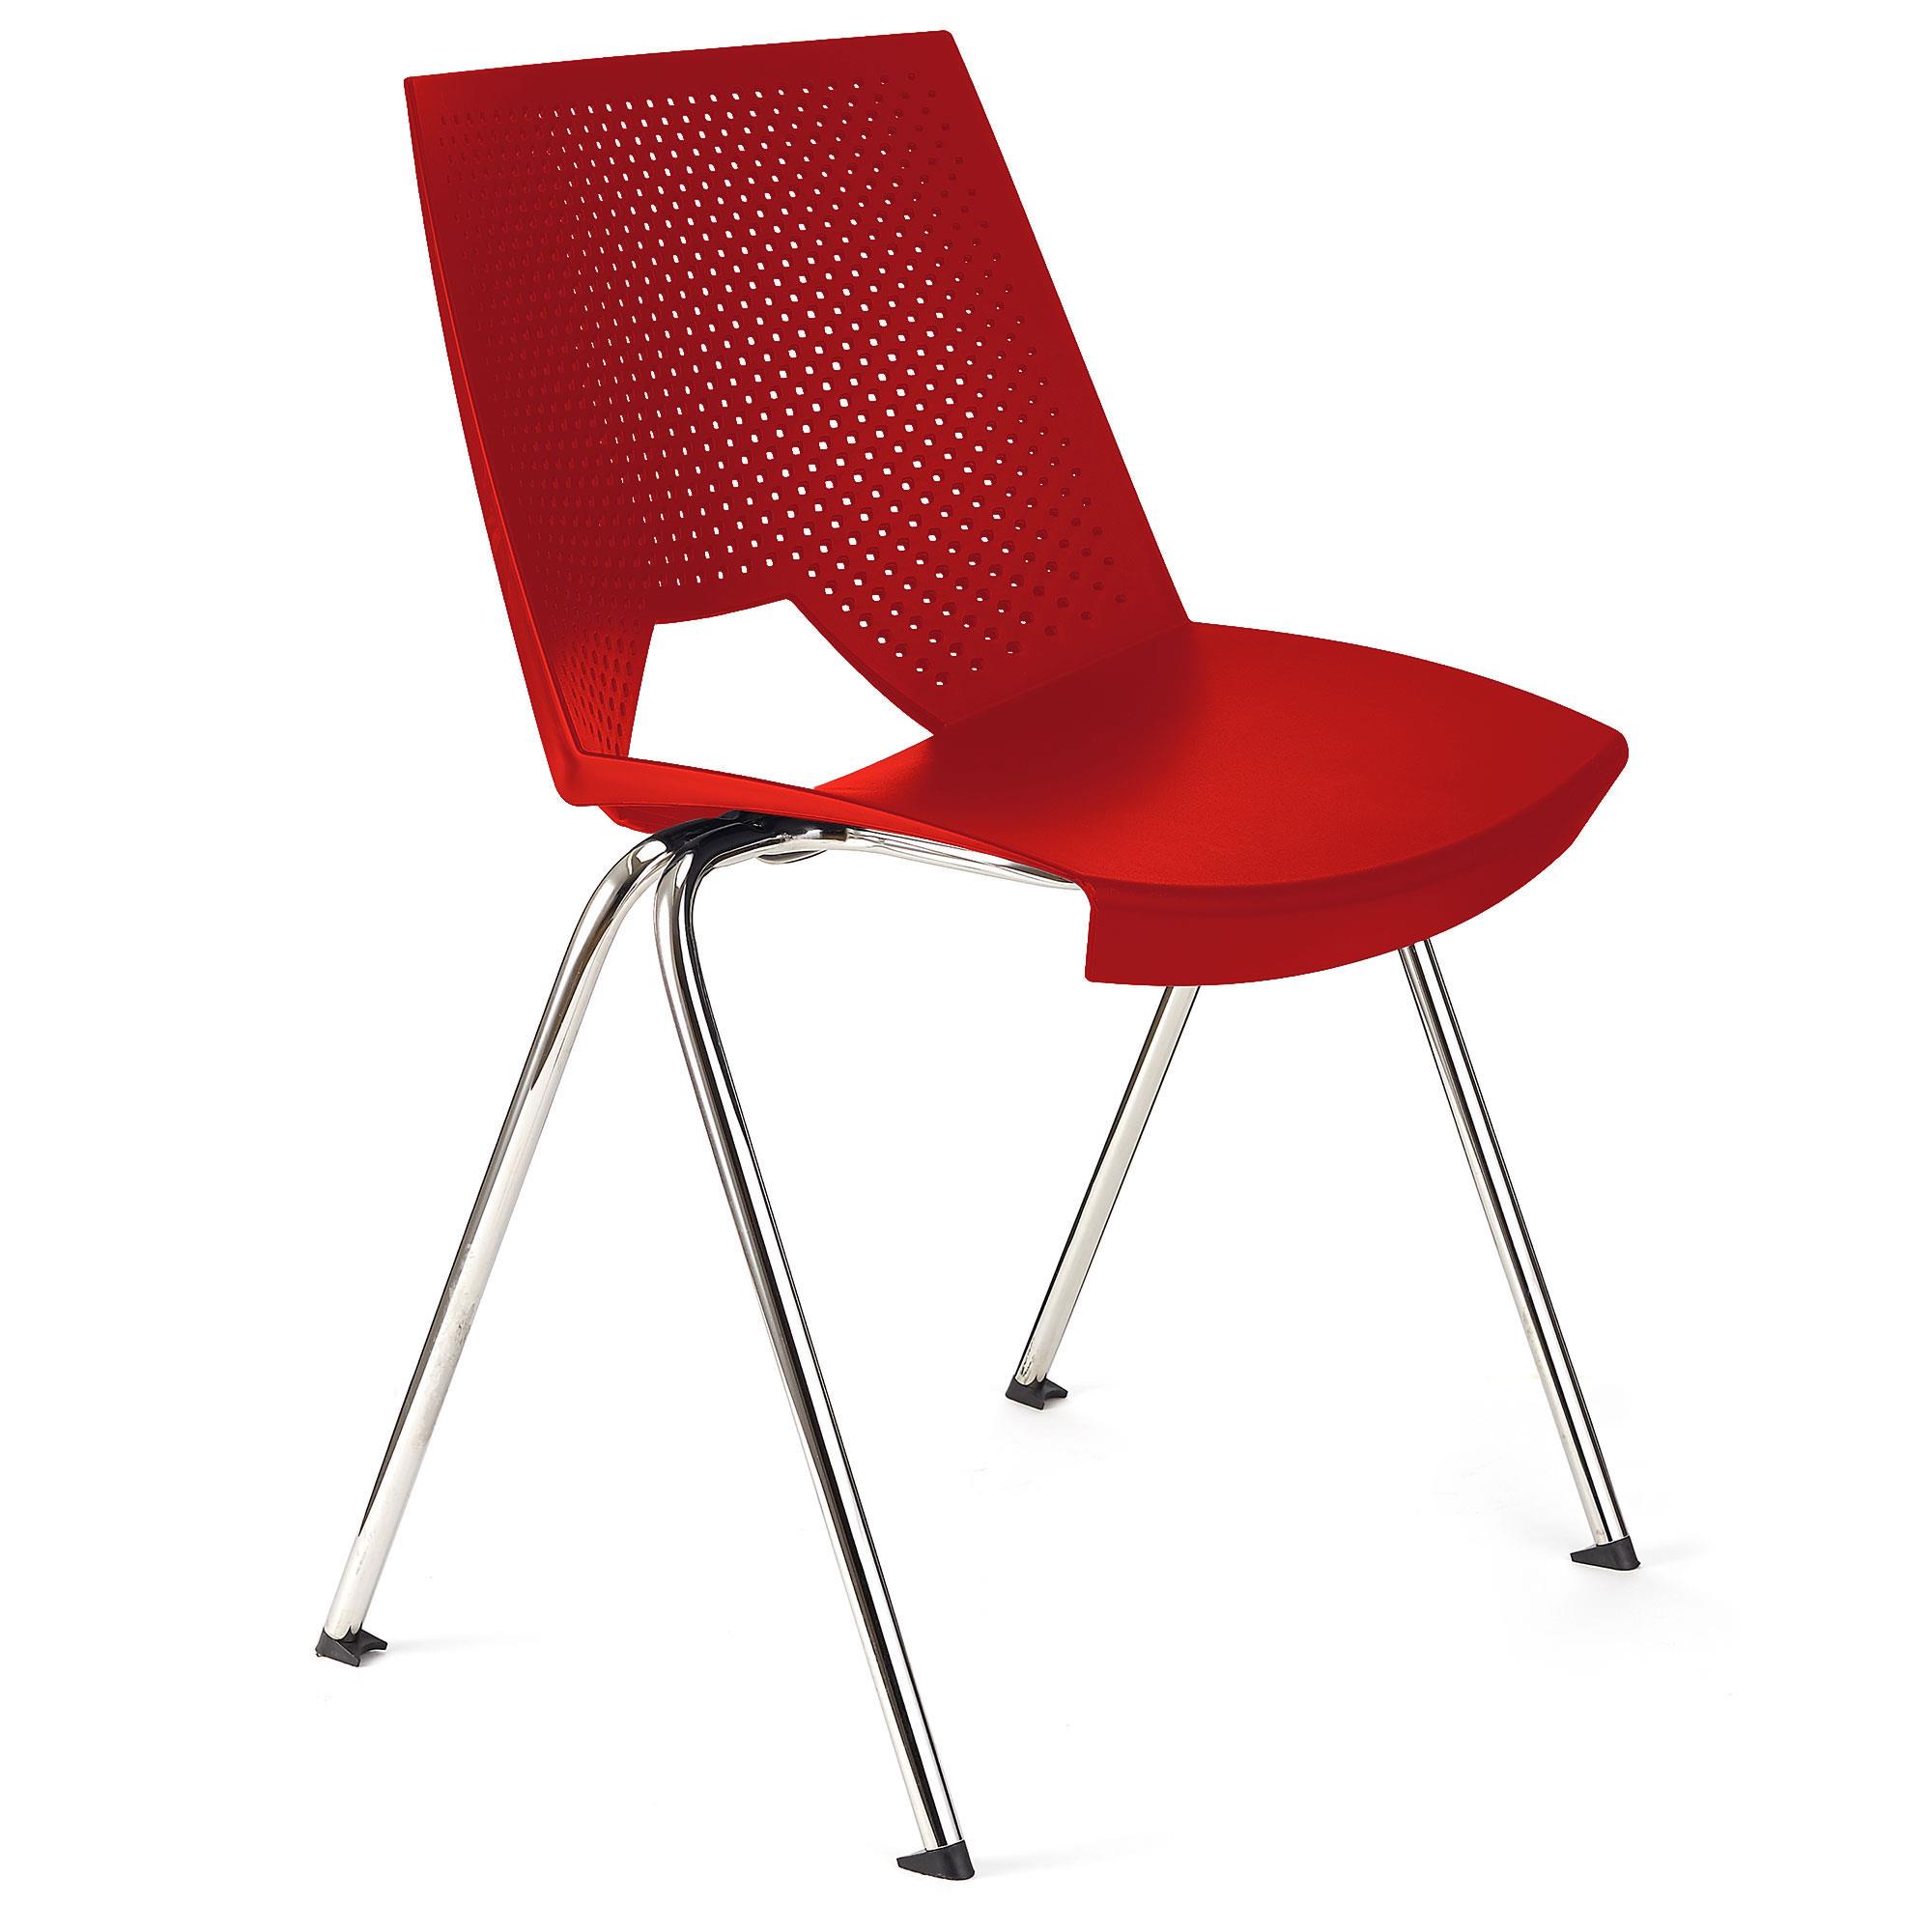 Konferenzstuhl ENZO, bequem, praktisch und stapelbar, Farbe Rot